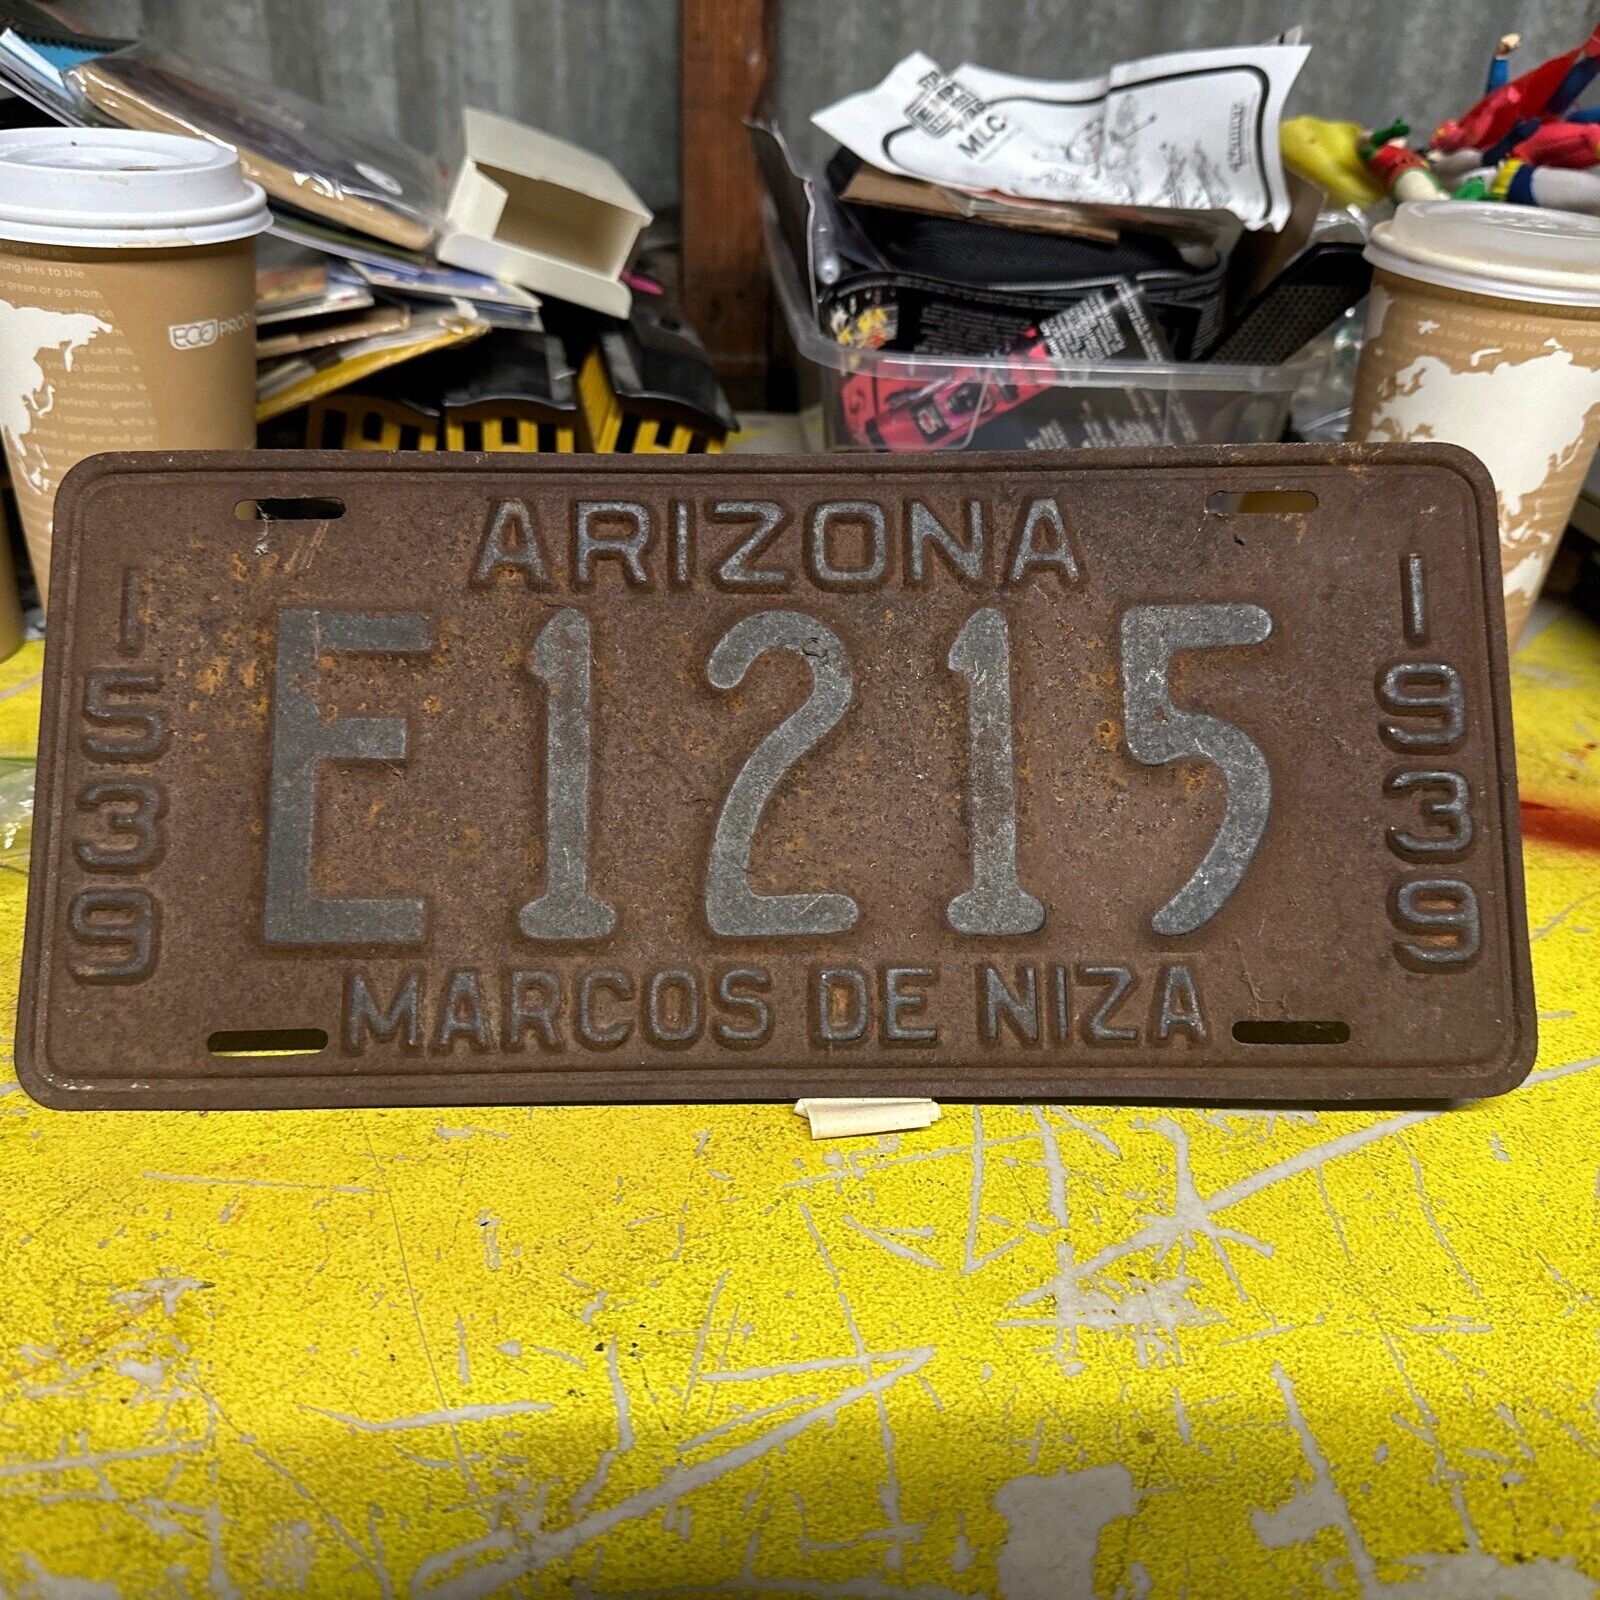 Arizona 1939 License Plate MARCOS DE NIZA Rusty